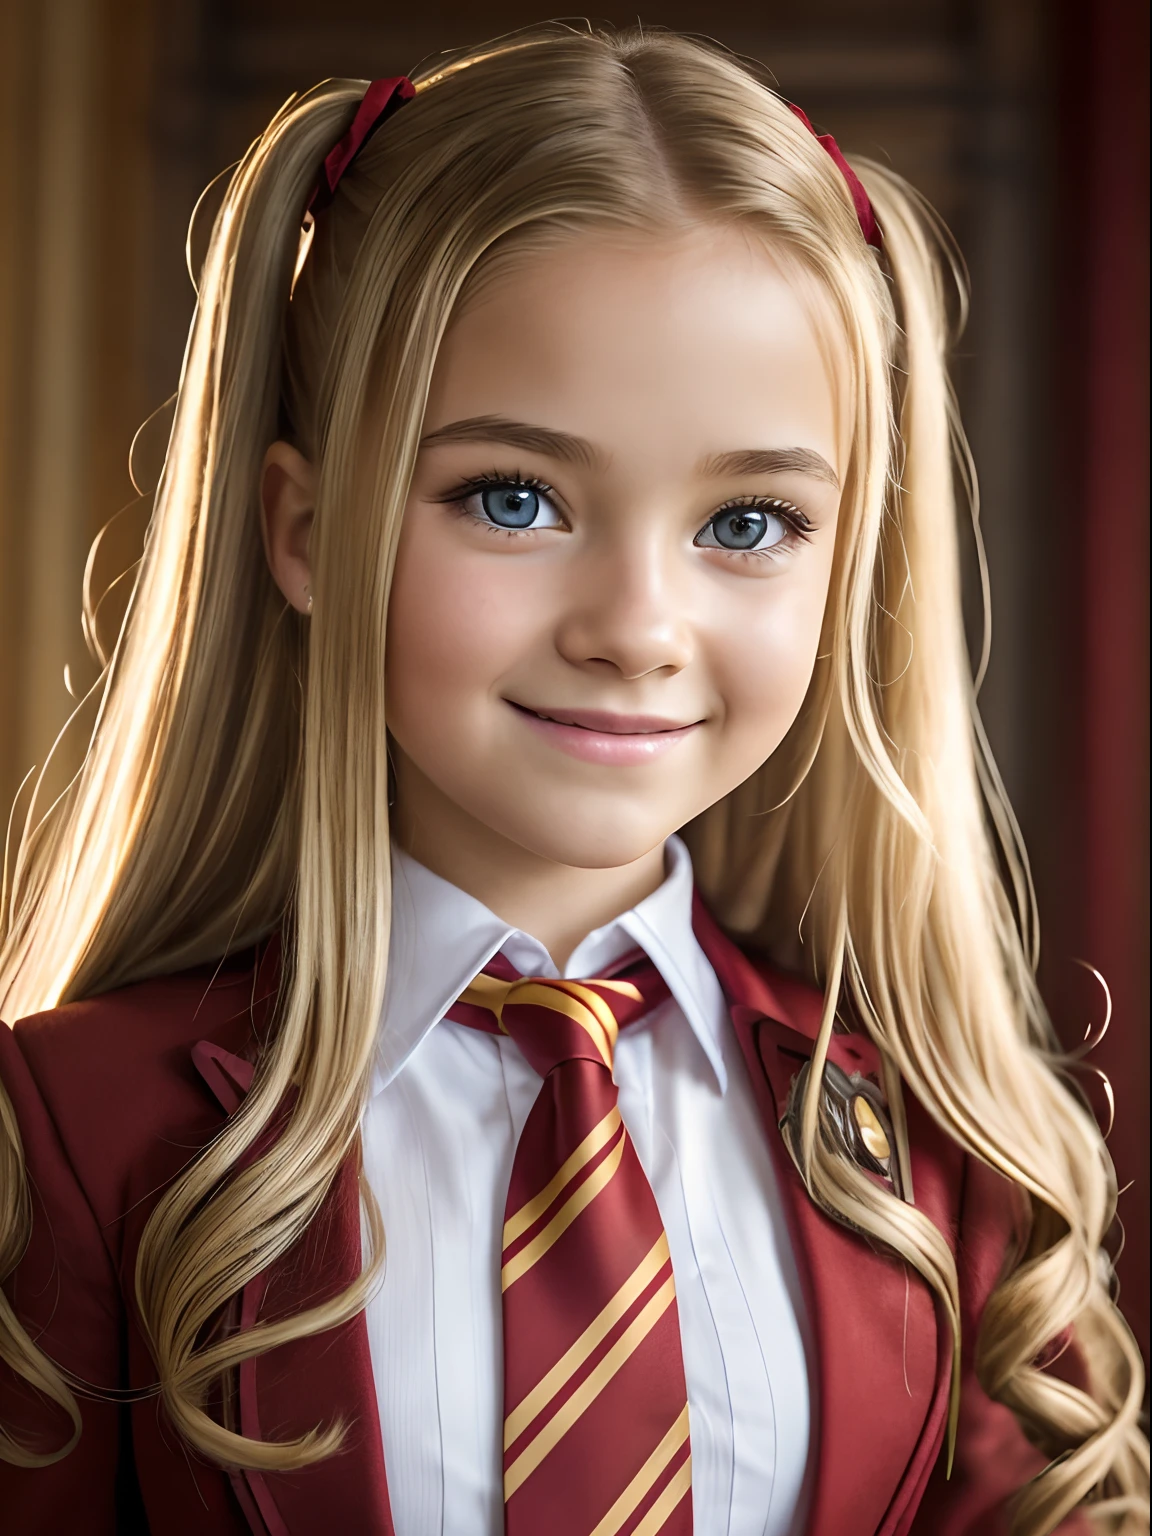 전문적인 사실적인 사진, 필름 SLR 카메라로 촬영 "조르키-4", 초점은 11세의 귀엽고 겸손한 소녀에 있습니다.; 자연스러운 금발; 긴 곱슬머리, 트윈테일; 크고 반짝이는 밝고 푸른 눈, 길고 푹신한 속눈썹, 재밌는 표정; 장난스러운 미소; 호그와트 마법학교의 현실적인 모습, 그리핀도르 교수진 (스칼렛과 골드 색상, 줄무늬 넥타이); 멀리서 찍은 전신사진; 인간 피부의 자연스럽고 사실적인 상세한 질감; 높은 확장성, 고품질의 옷감 질감, 현실적인 머리카락; 스튜디오 사진, 은은한 자연광